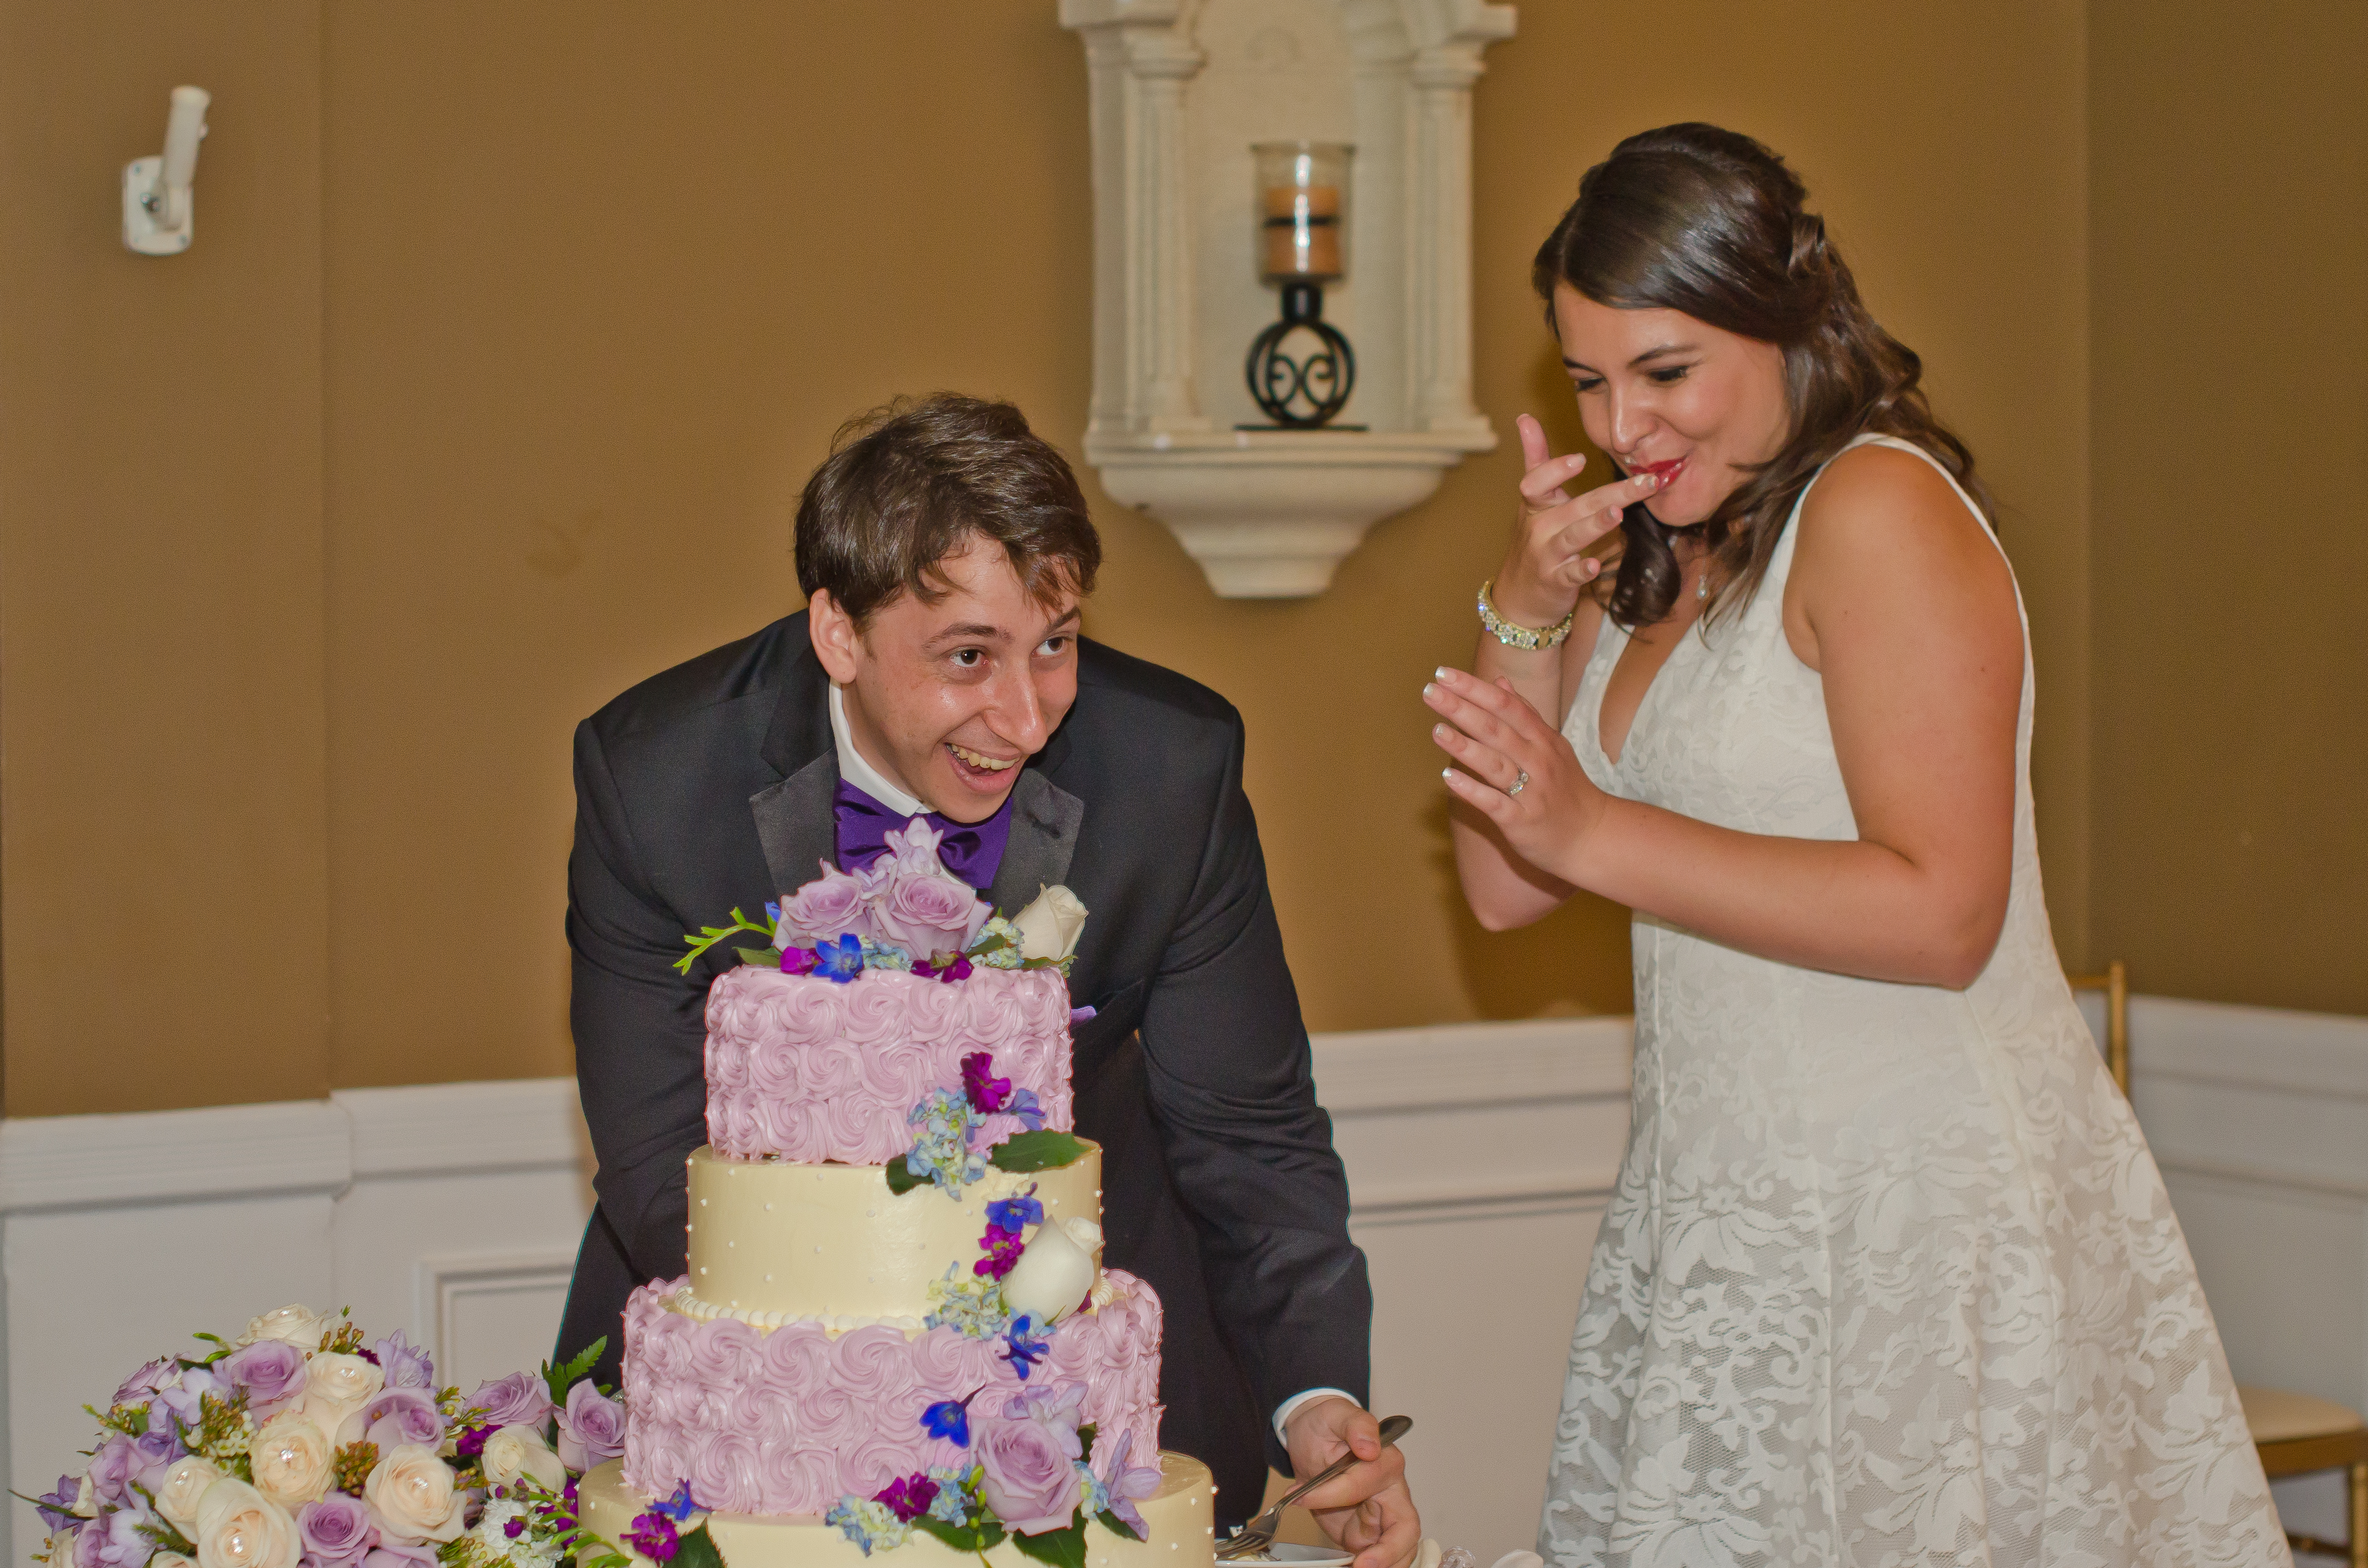 Aidan and Kaitlin with wedding cake.jpg